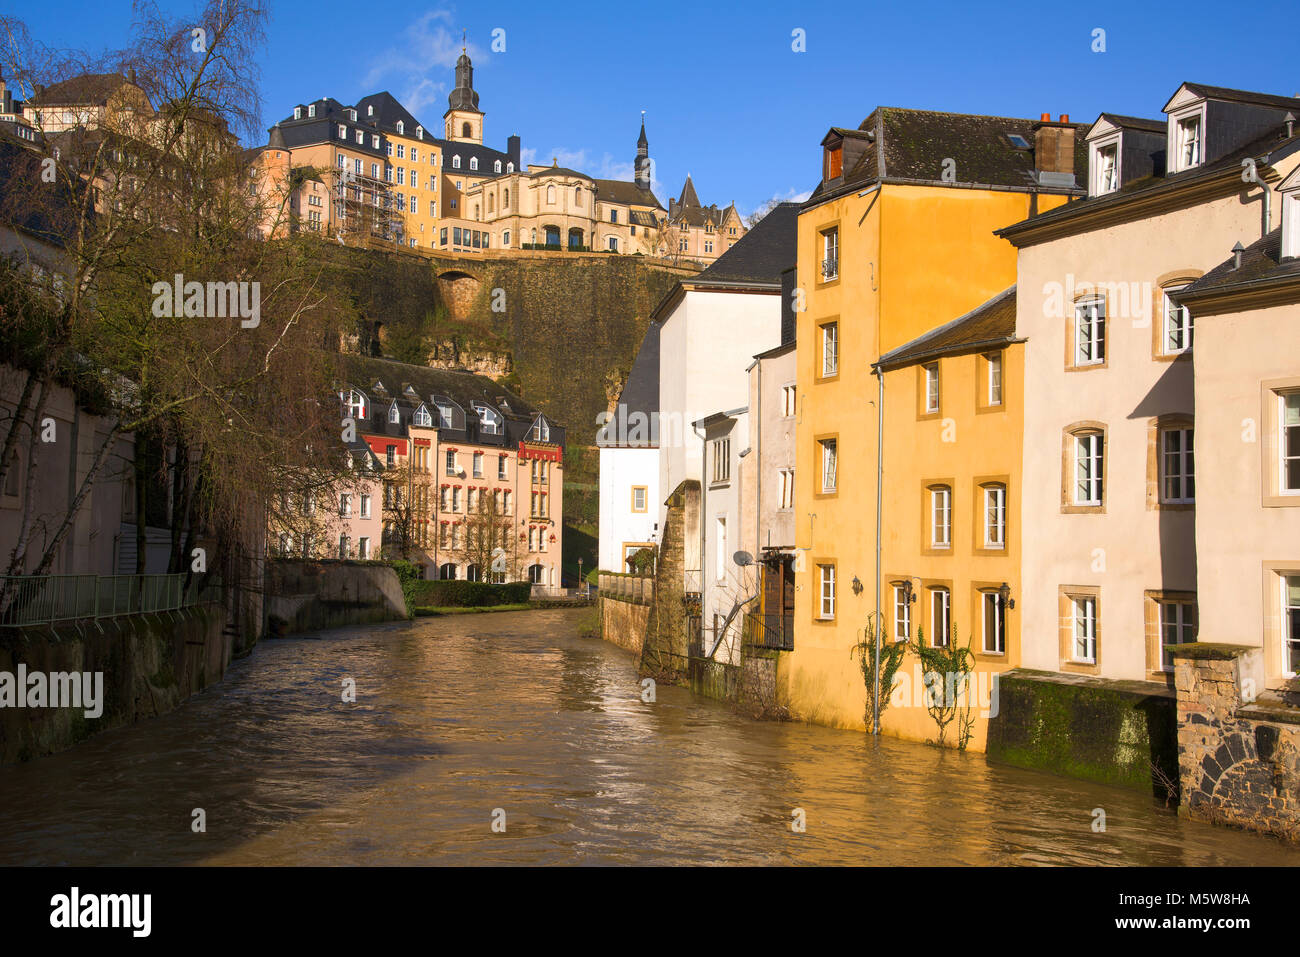 Una vista del Río Alzette mientras pasa a través del Grund trimestre en la ciudad de Luxemburgo, Luxemburgo y la Ville Haute negra en la parte superior izquierda, highli Foto de stock